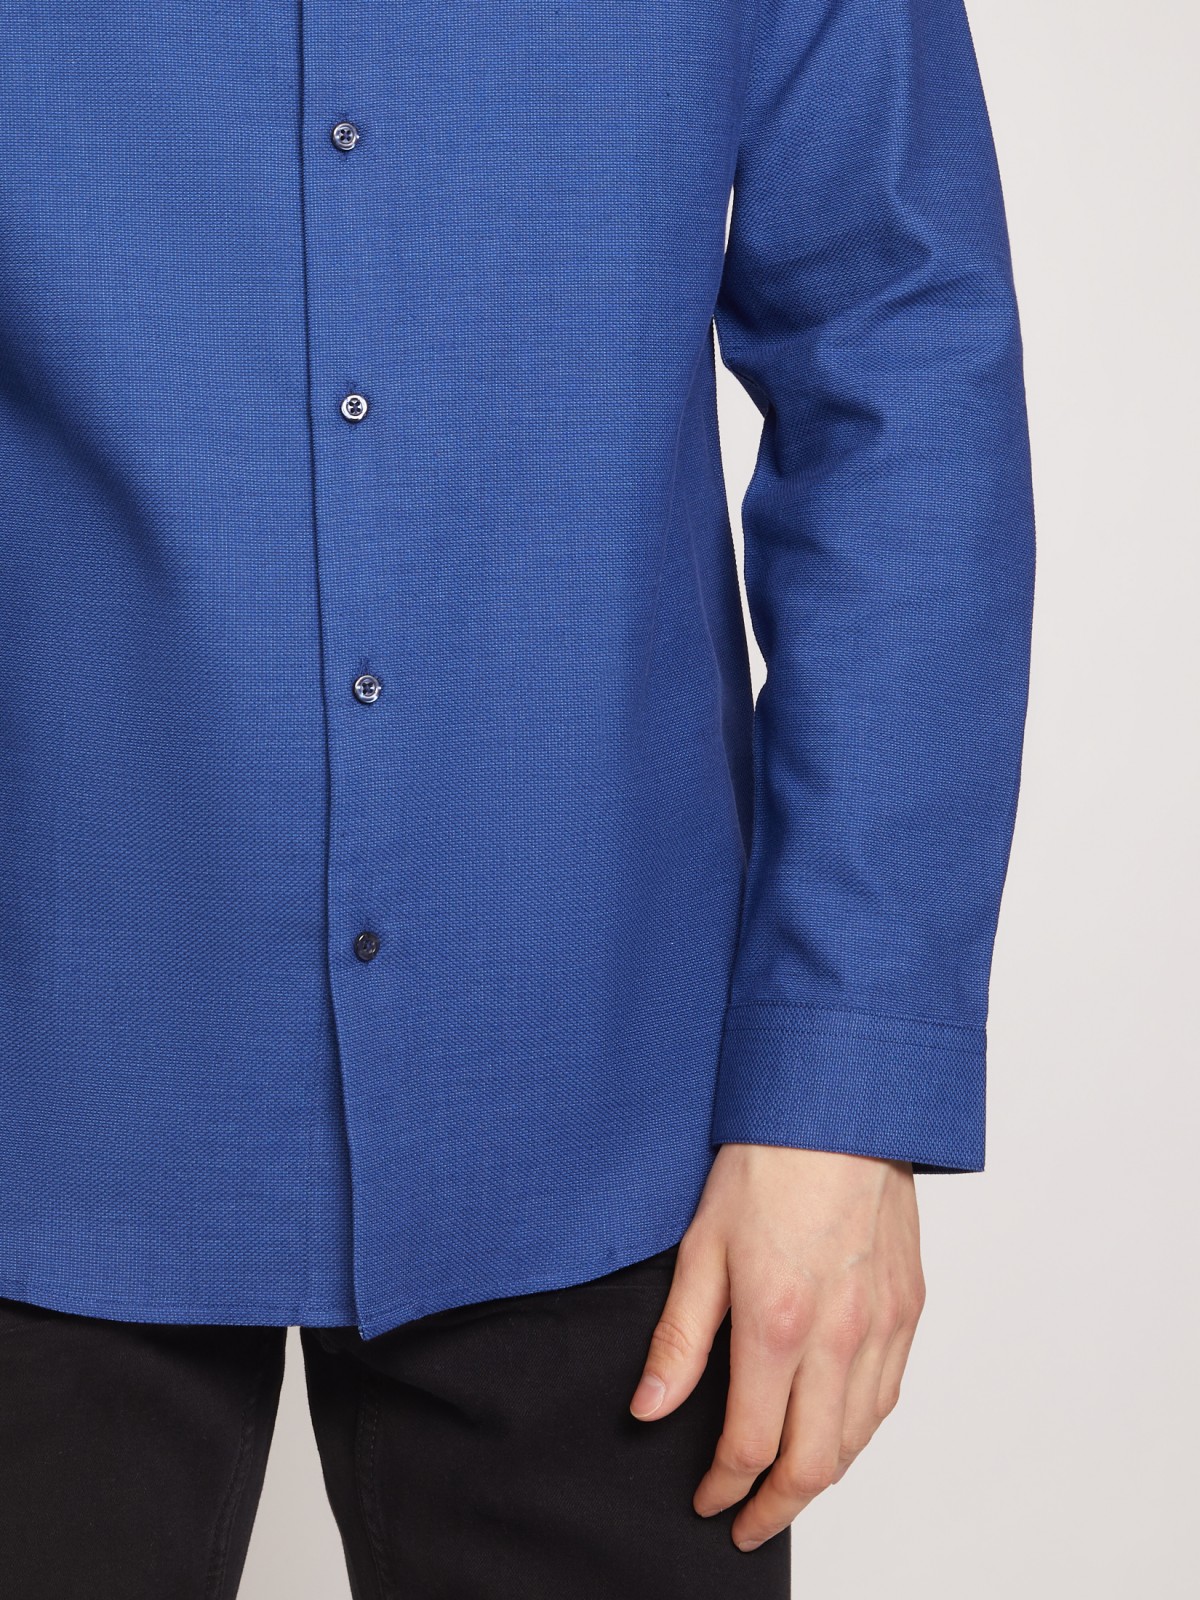 Рубашка с воротником-стойкой zolla 011322159053, цвет голубой, размер S - фото 5